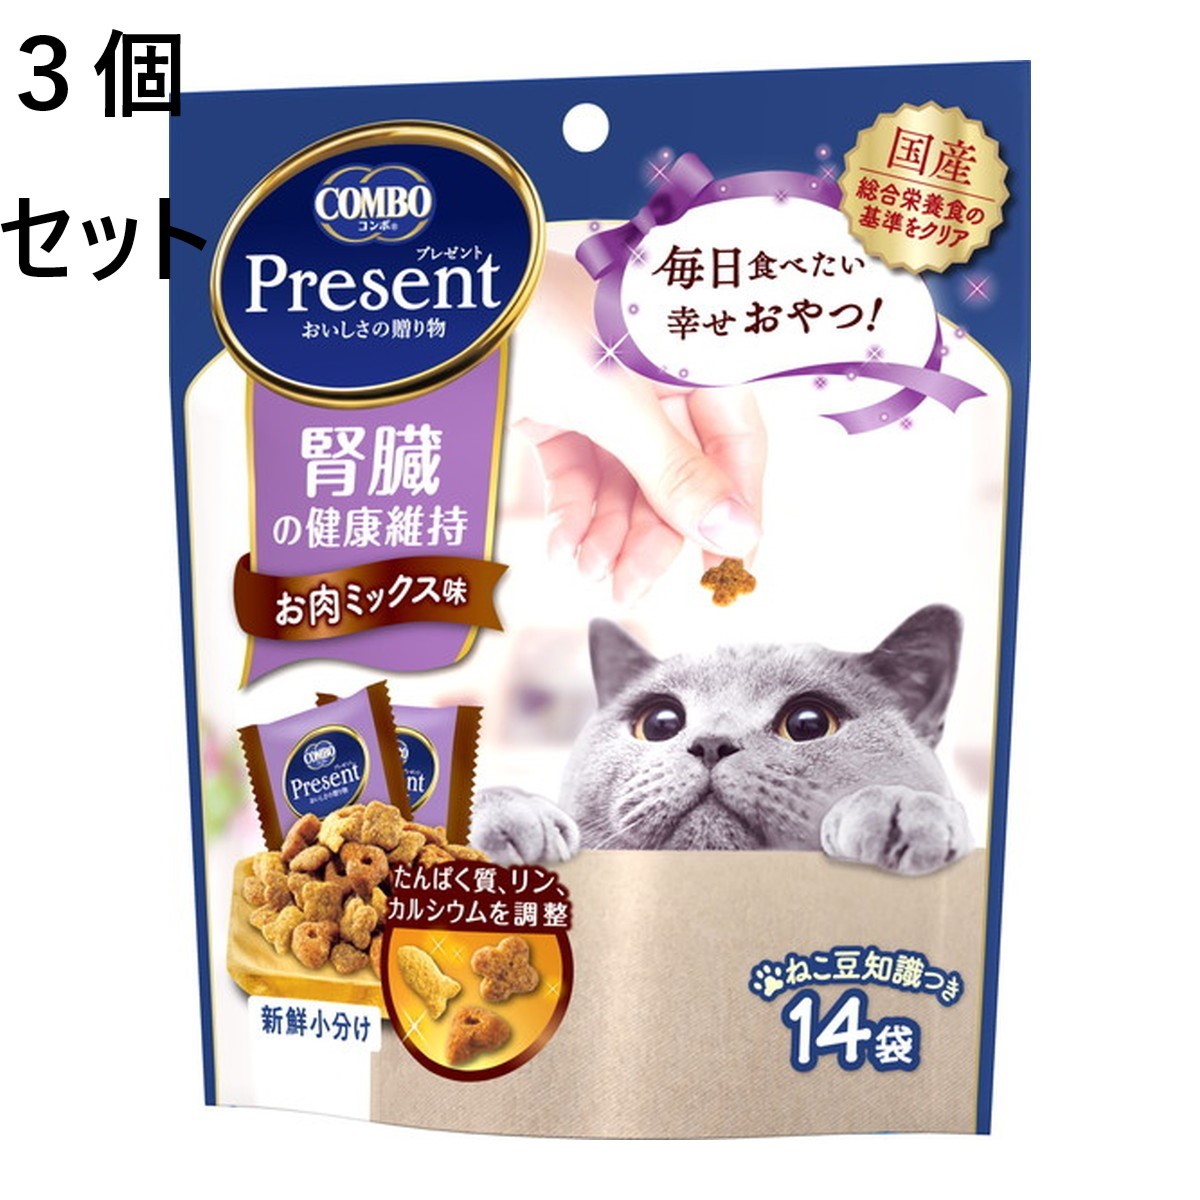 3 шт. комплект combo подарок кошка закуска ... здоровье техническое обслуживание 42g. мясо Mix тест Япония корм для животных COMBO для взрослой кошки 